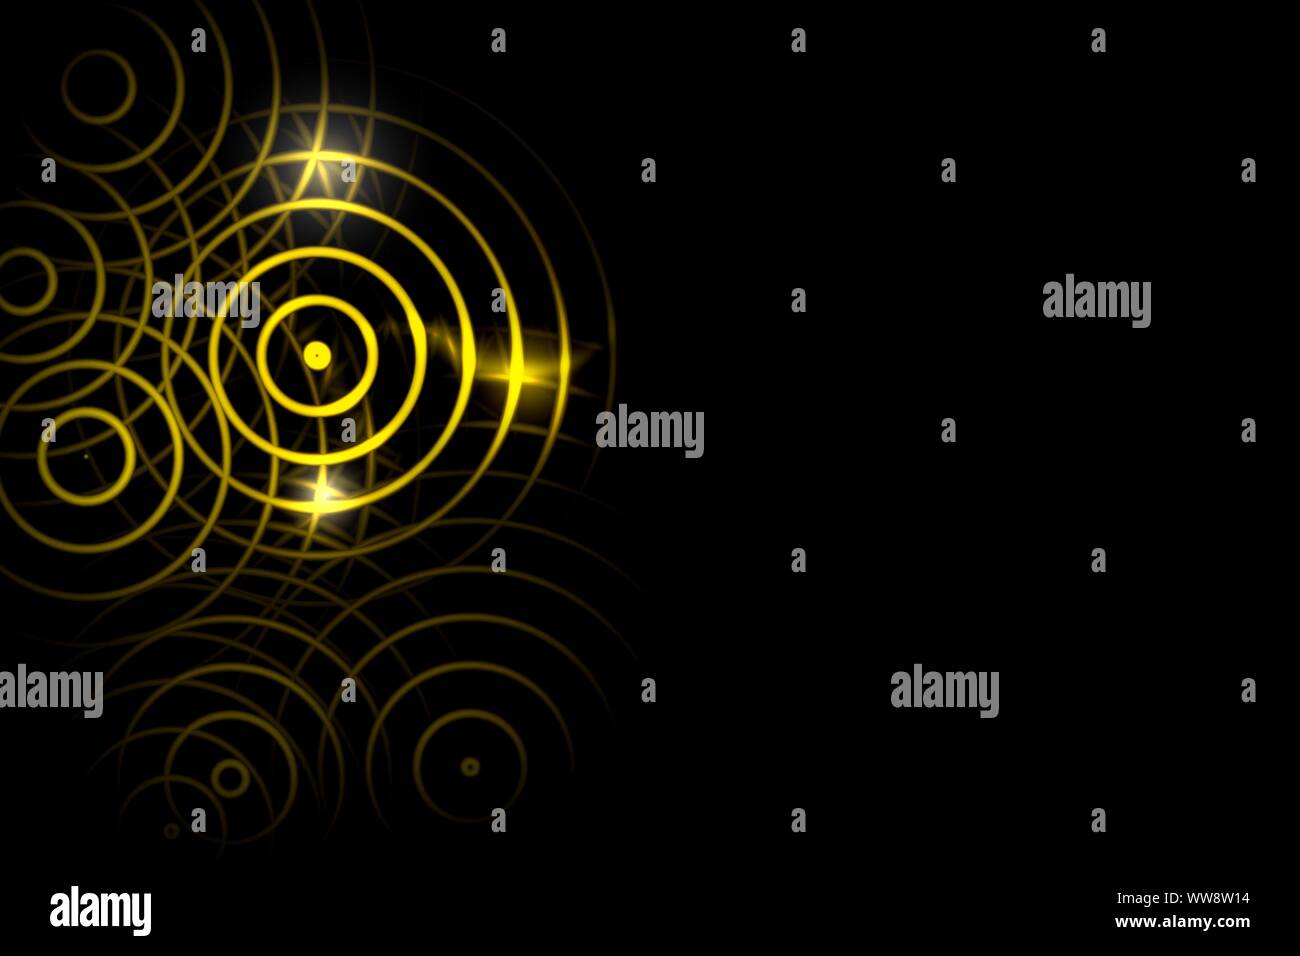 Lumière abstraite cercle jaune avec effet anneau oscillant des ondes sonores sur fond noir Banque D'Images